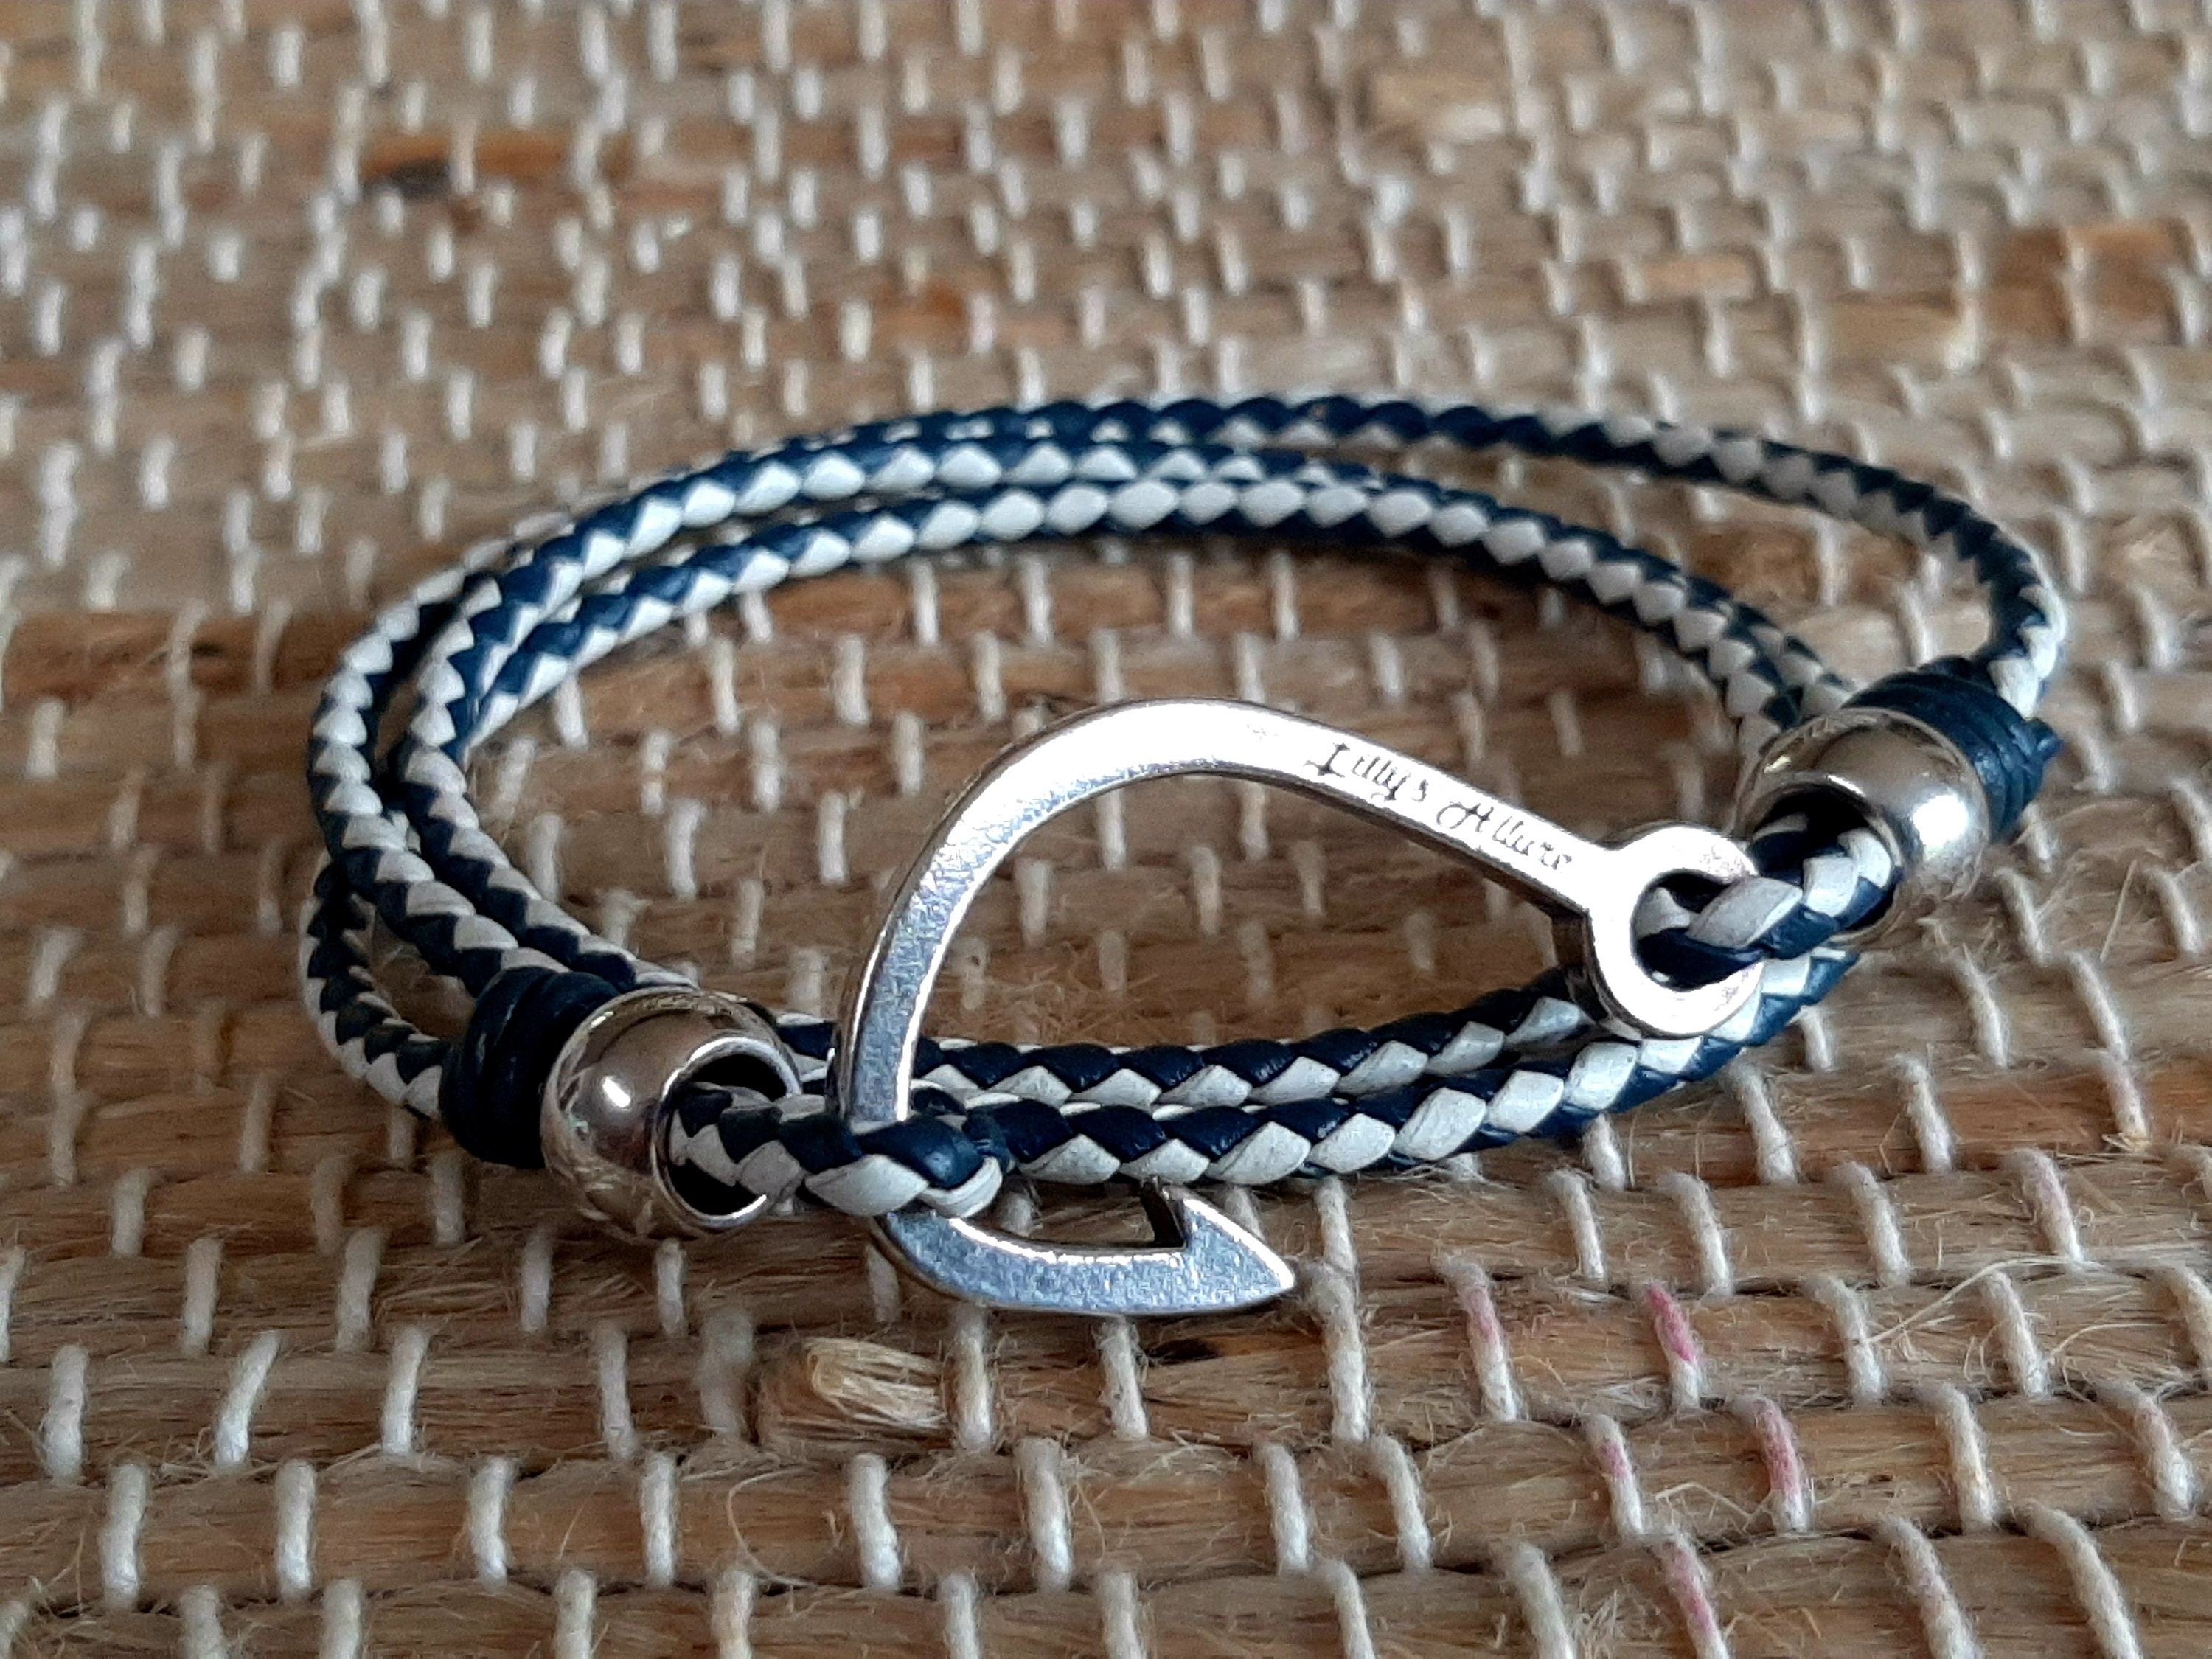 Bracelet for Men, Fish Hook Clasp, Fisherman Hook Bracelet